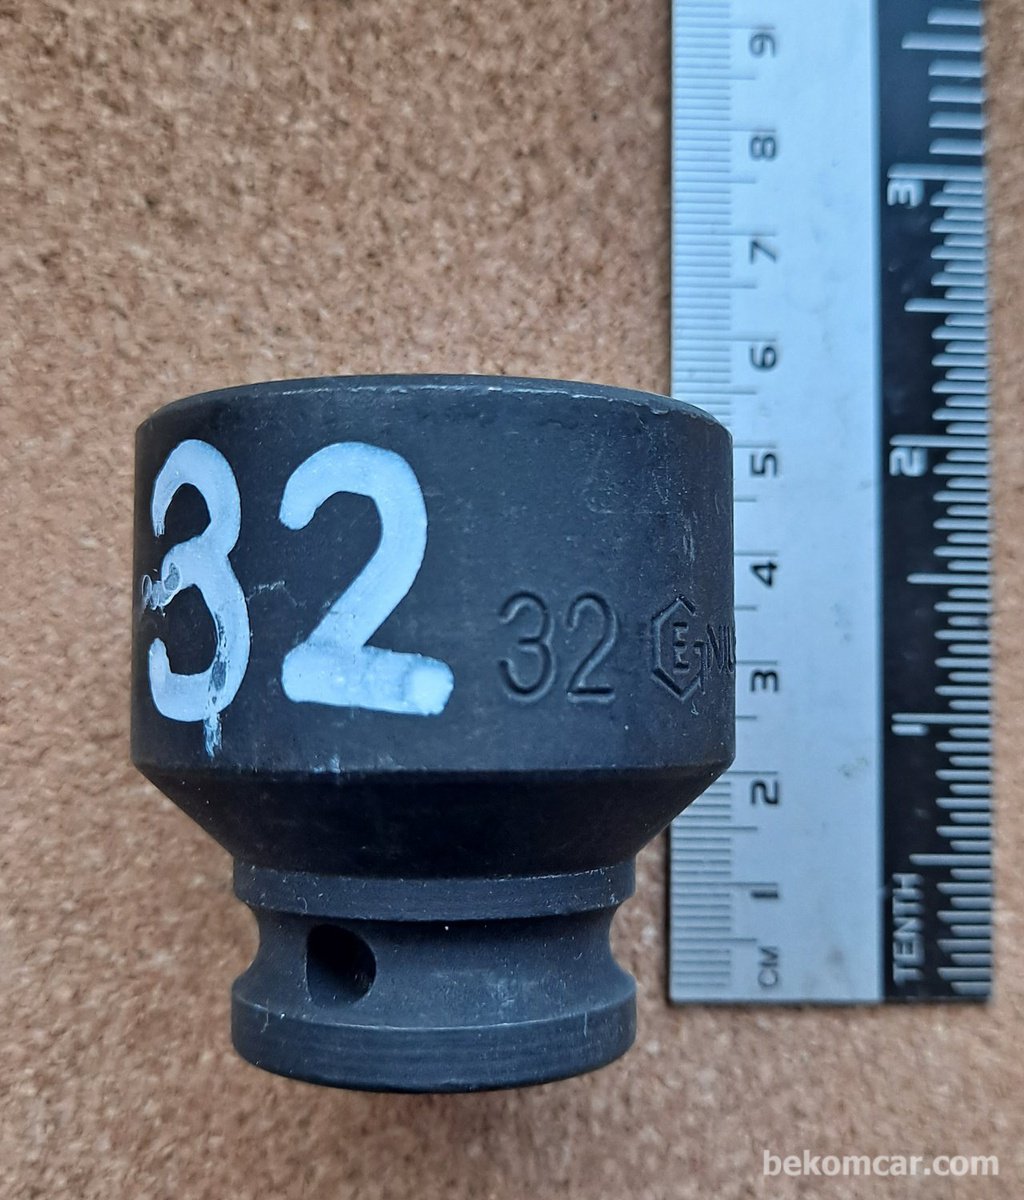 6각 32mm 임팩트용 1/2" 소켓|ベコムカー (bekomcar)